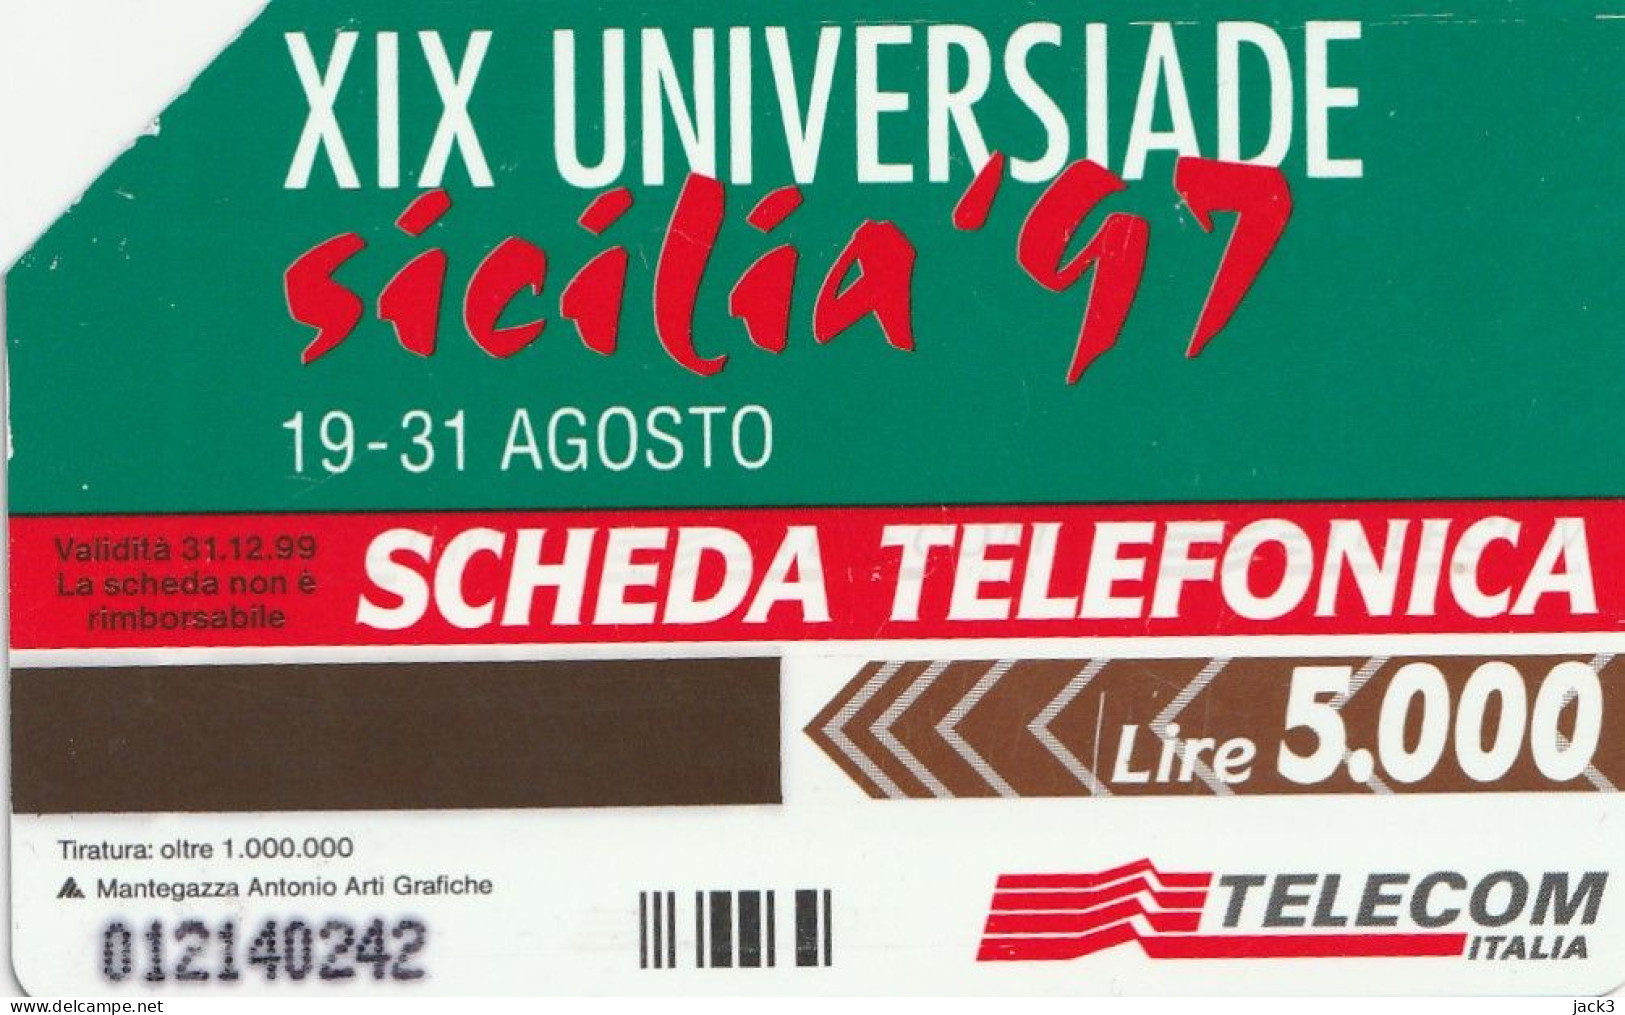 SCEDA TELEFONICA - XIX UNIVERSIADE - SICILIA '97 (2 SCANS) - Public Themes